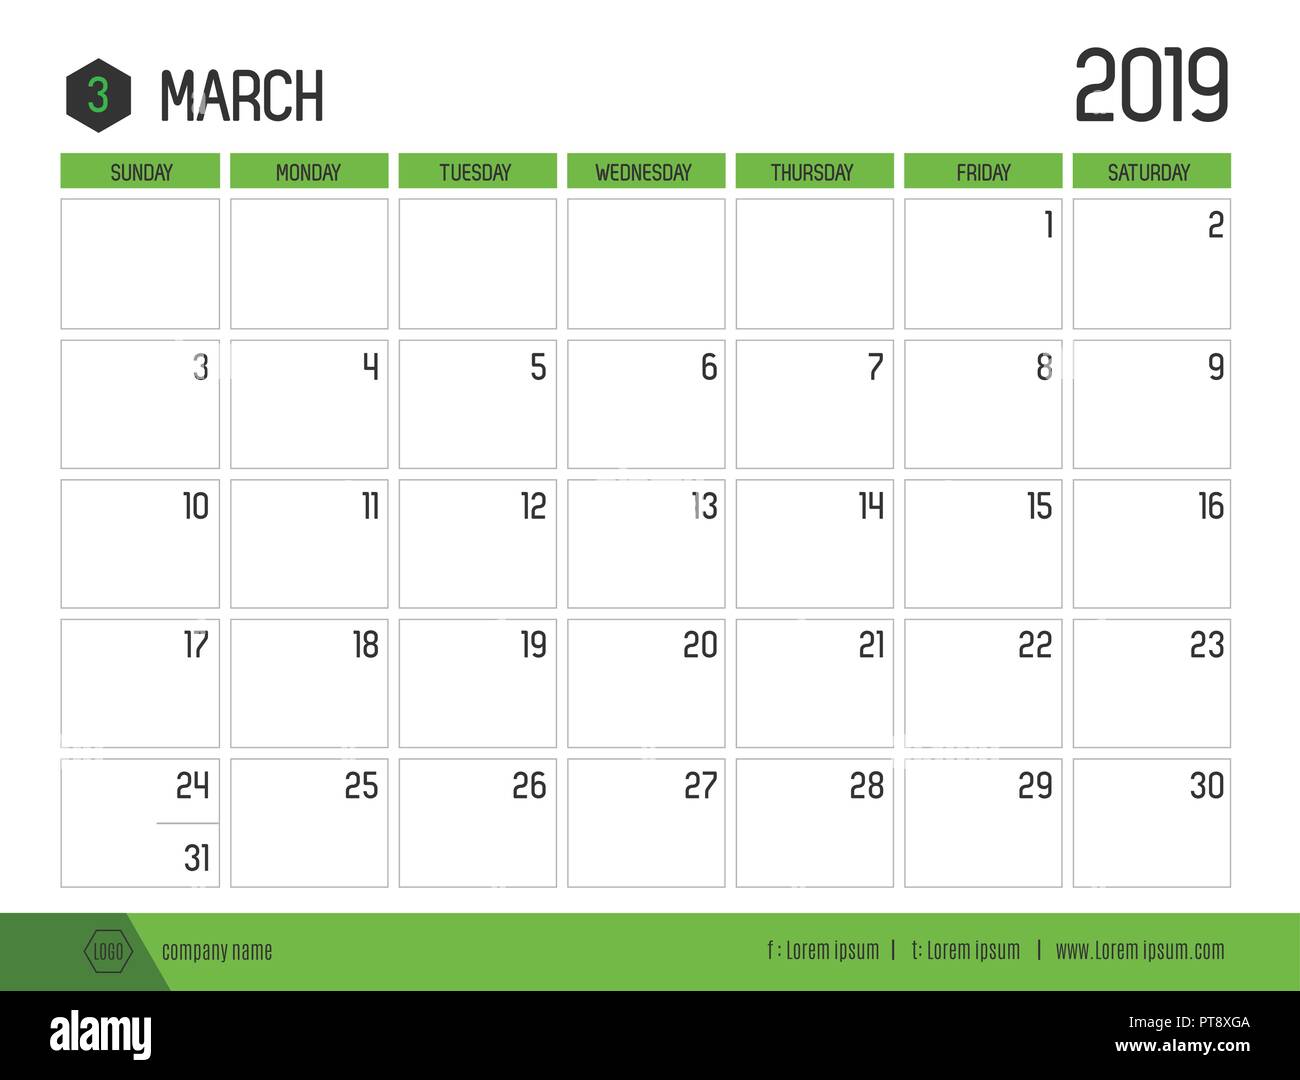 Vecteur de calendrier 2019 vert moderne ( mars ) en simple table propre style.full size 21 x 16 cm ; début de la semaine le dimanche Illustration de Vecteur